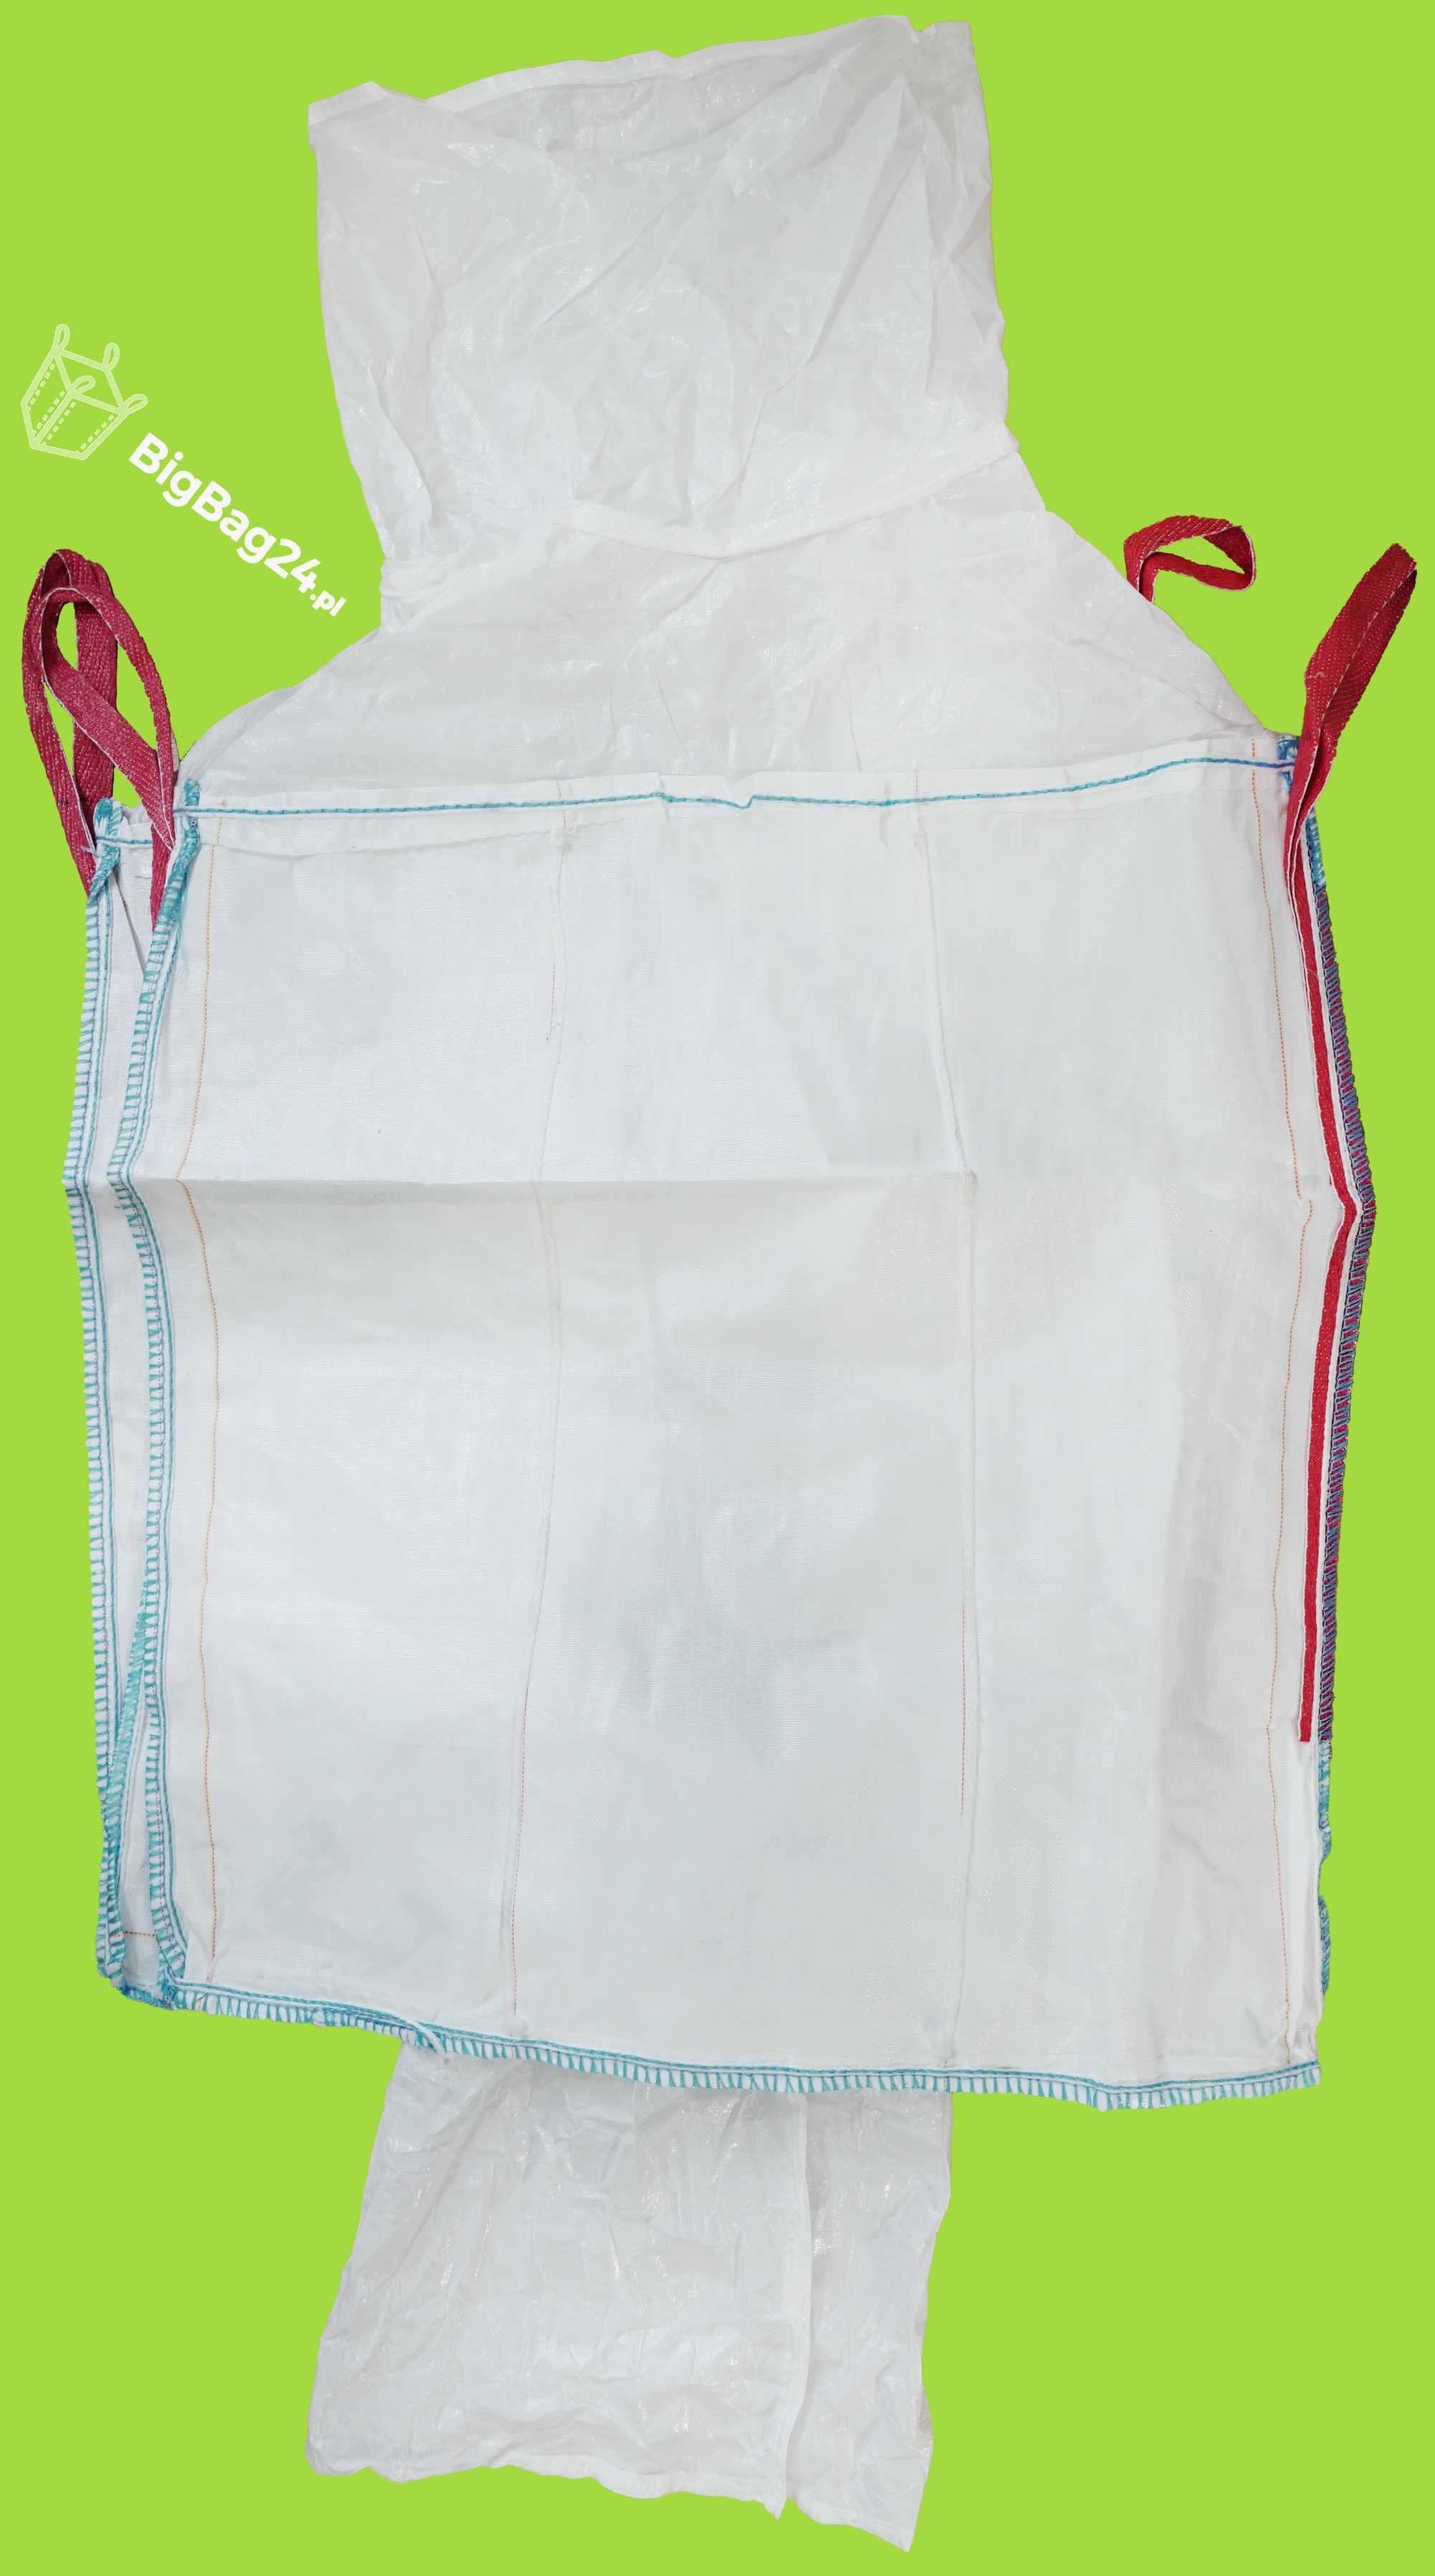 Big Bag Worek z wszytym wkładem foliowym na kiszonkę ccm 170 cm 1t